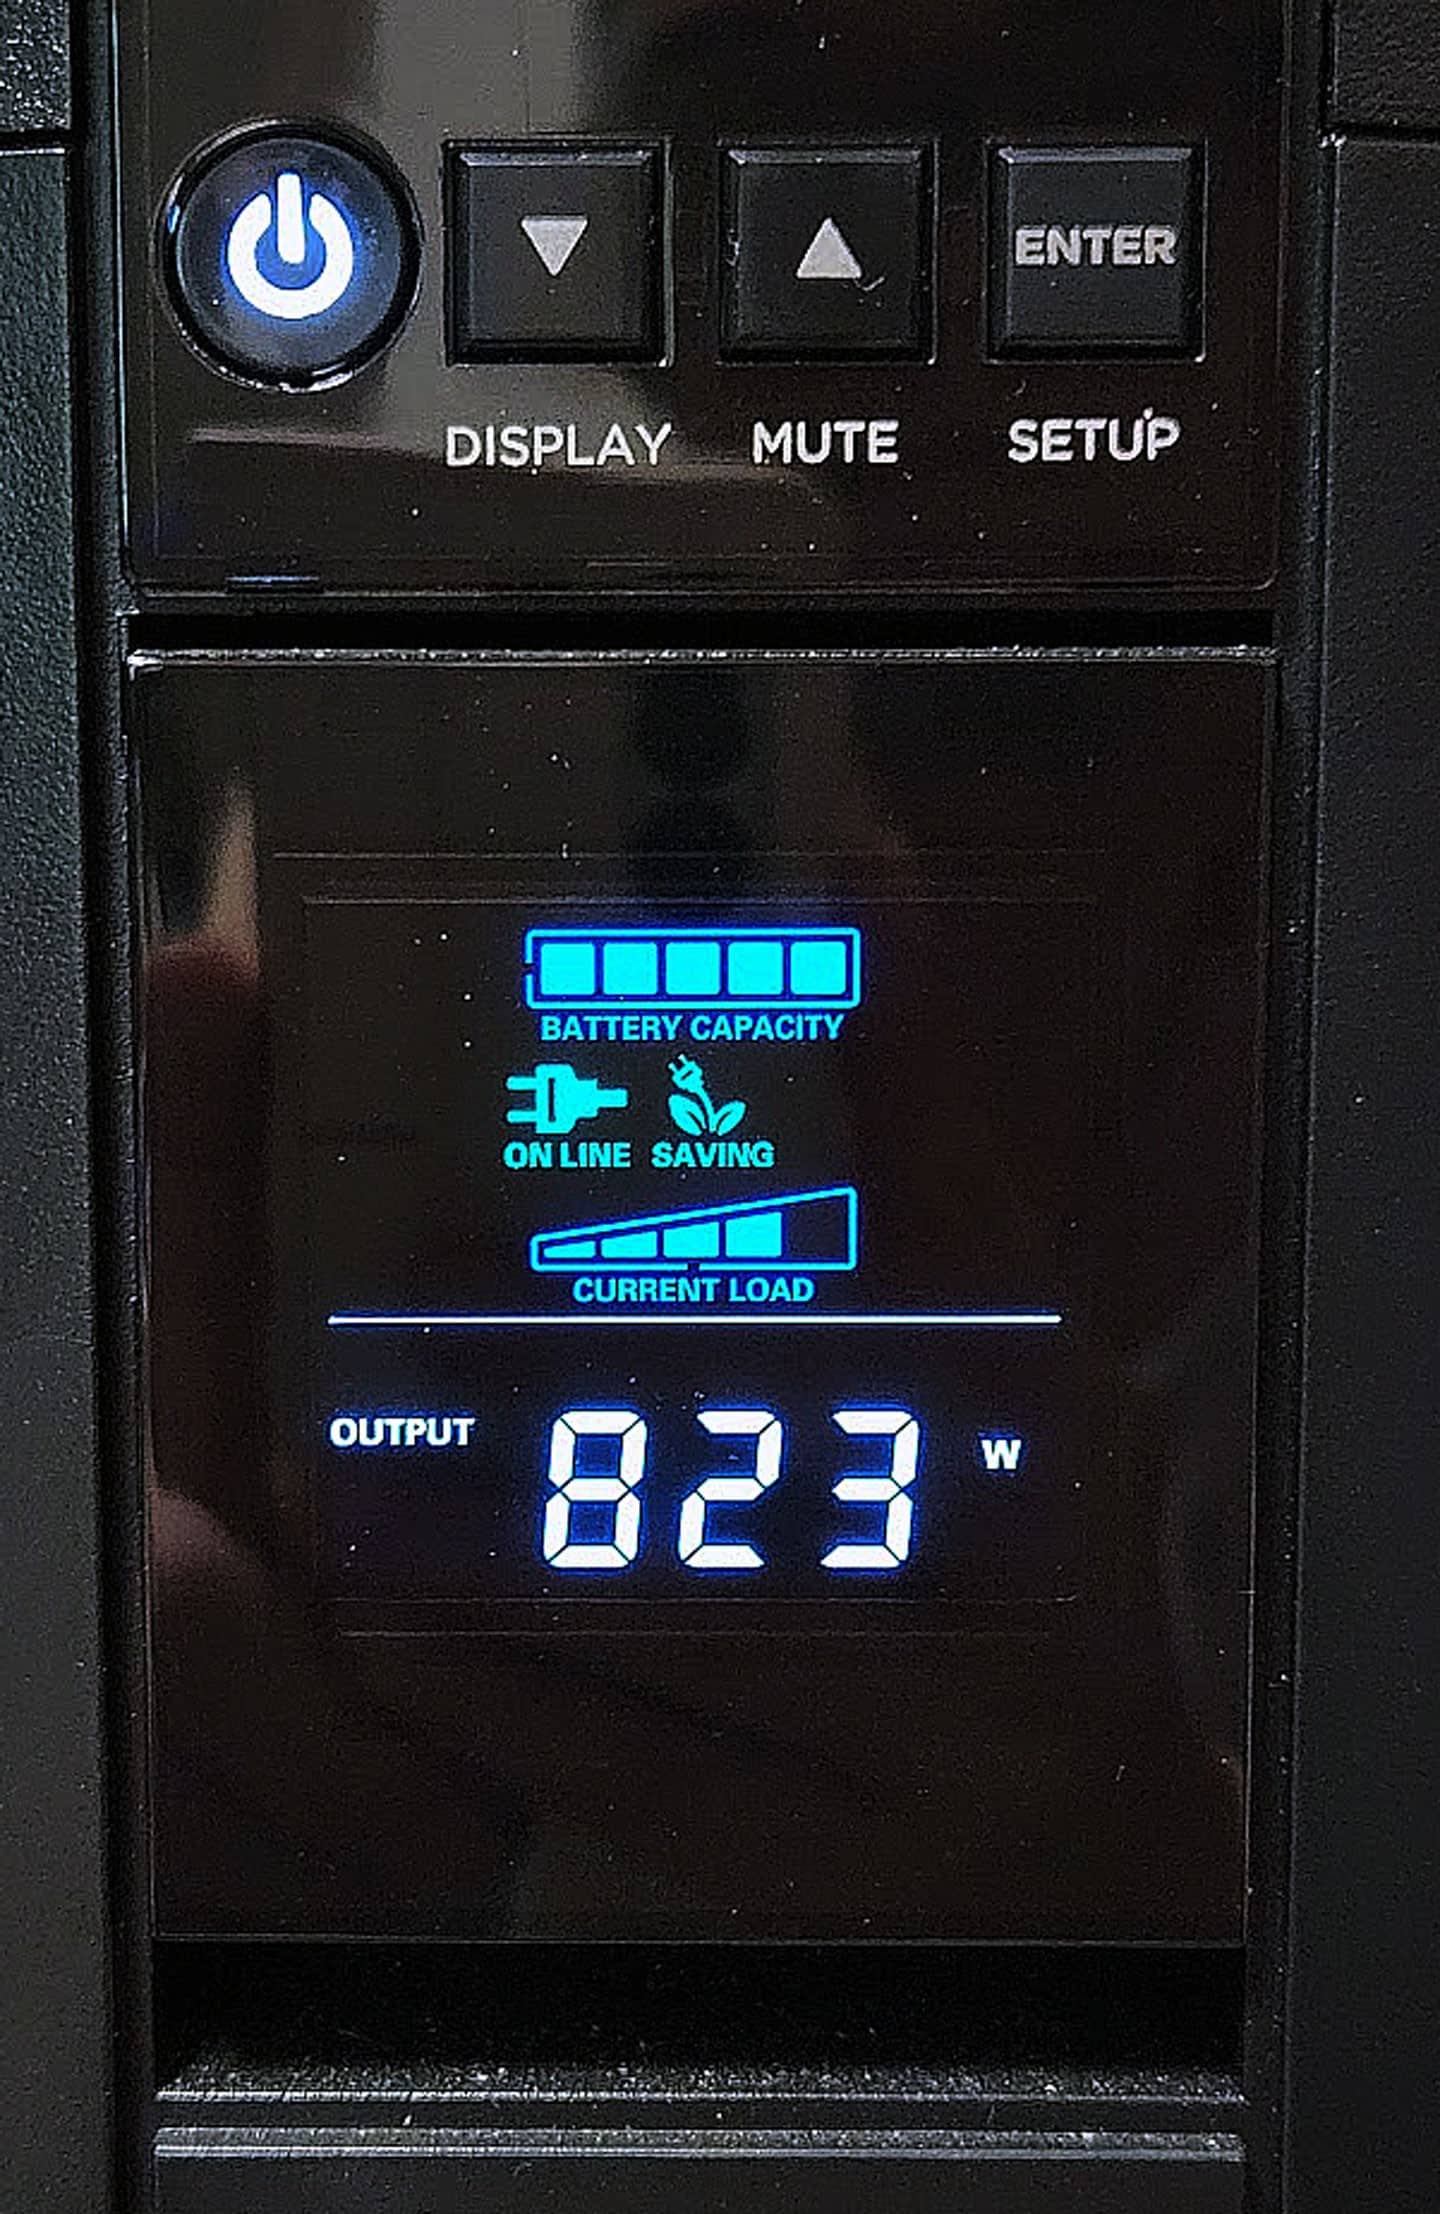 者實測 MEG Trident X2 時的環境有將主機連結至 UPS 不斷電系統，能同時監控備當下的功耗，可以發現在主機全速運行時功耗可達 823W，明硬體並未受到功耗限制。